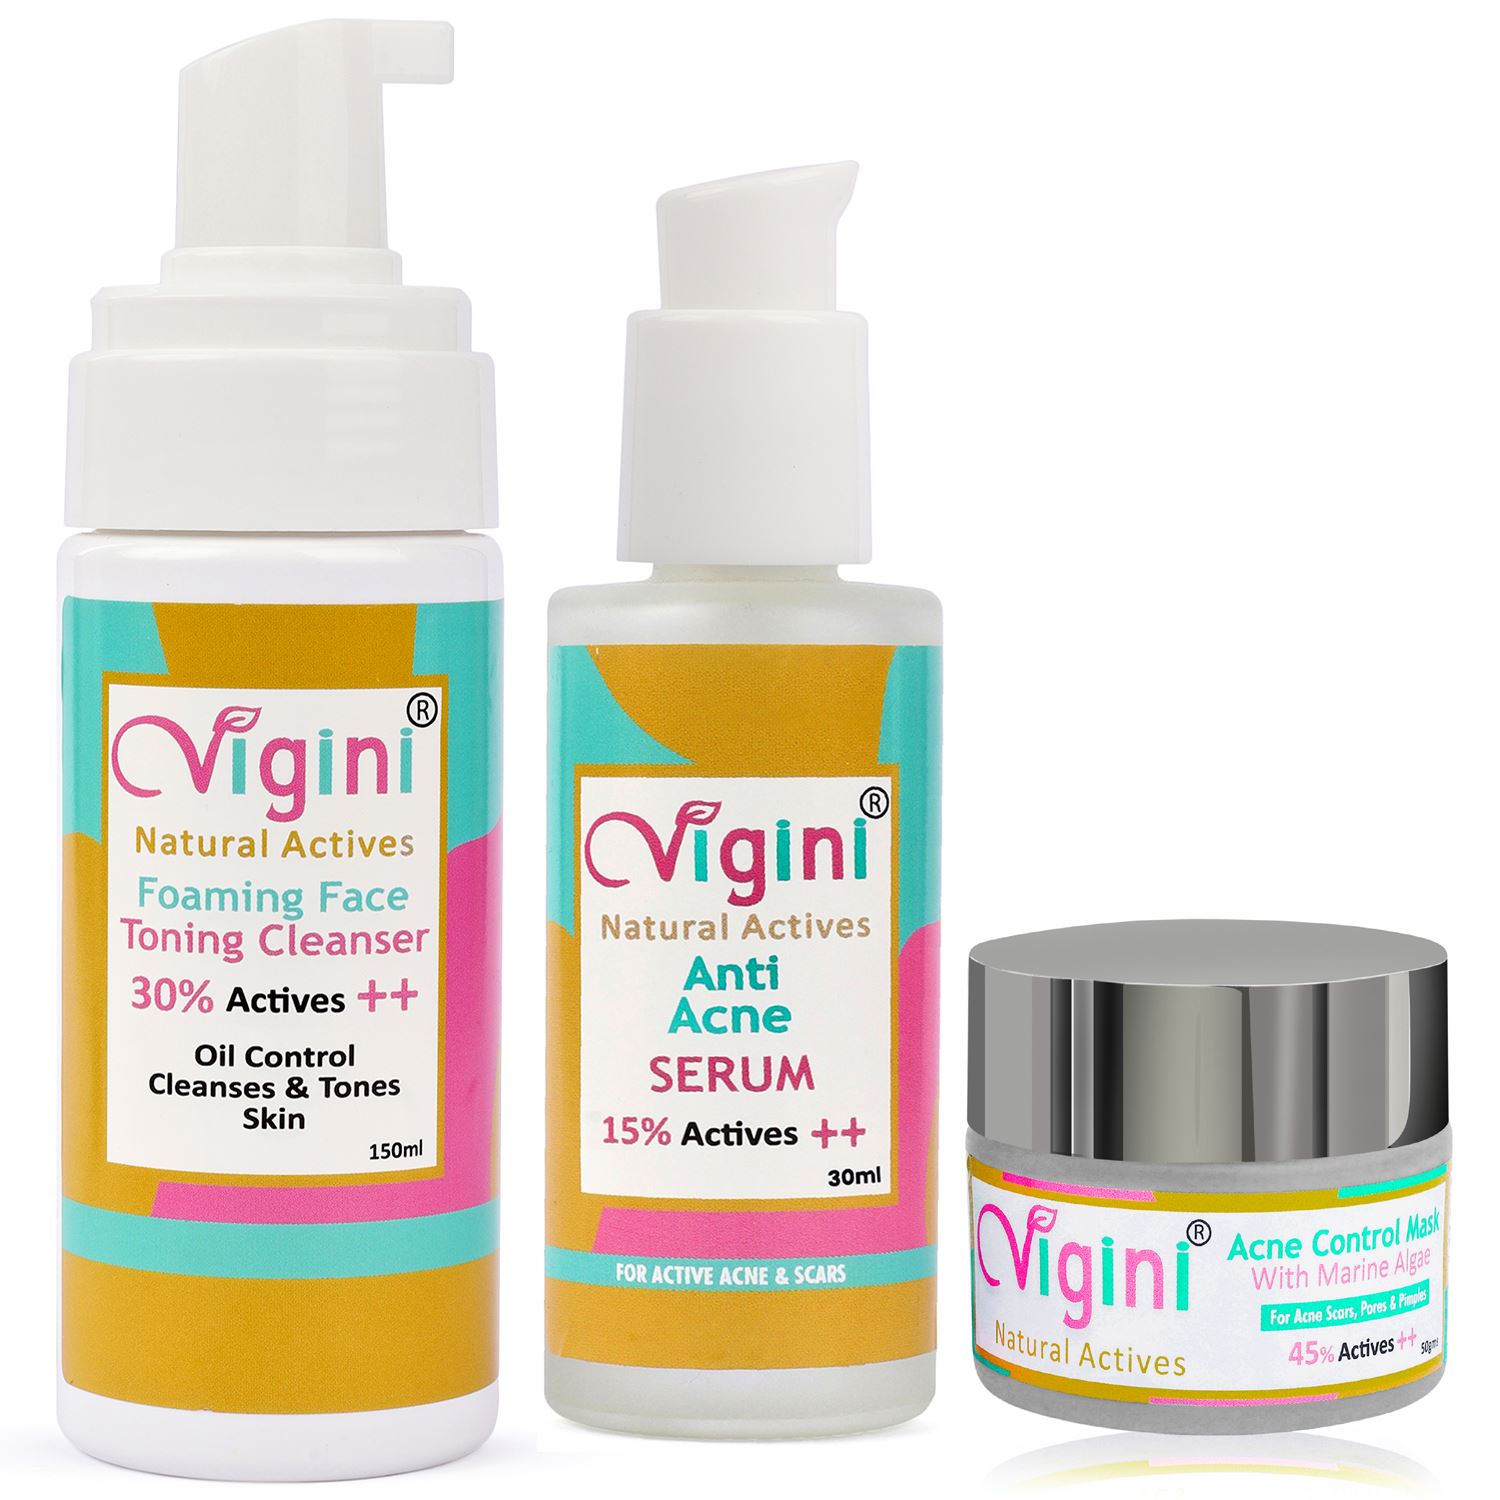 Vigini Anti Acne Foaming Toning Cleansing Wash + Face Serum + Mask 